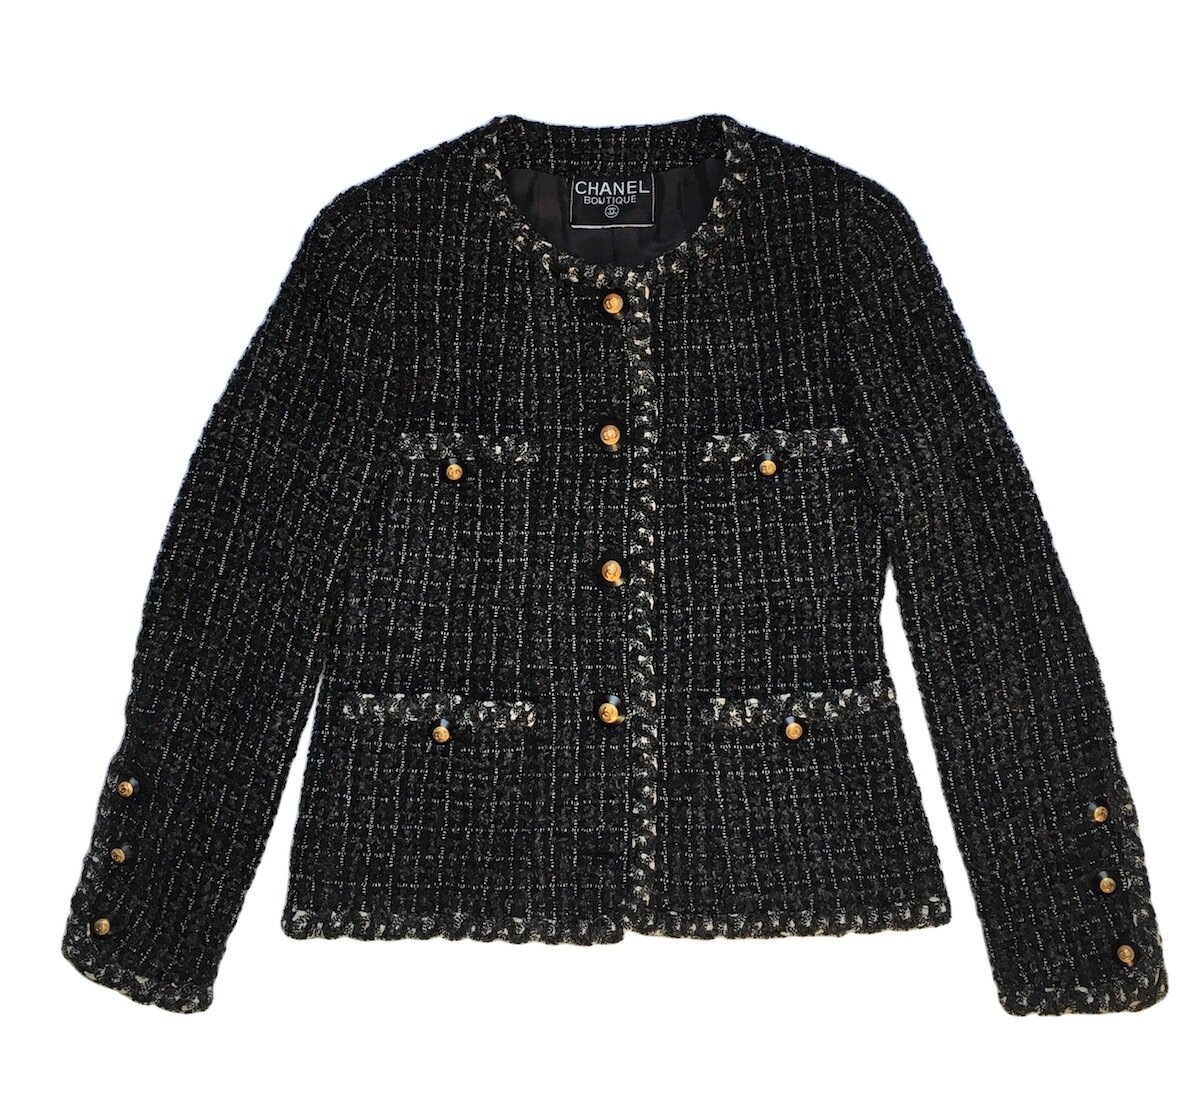 chanel tweed jacket vintage black